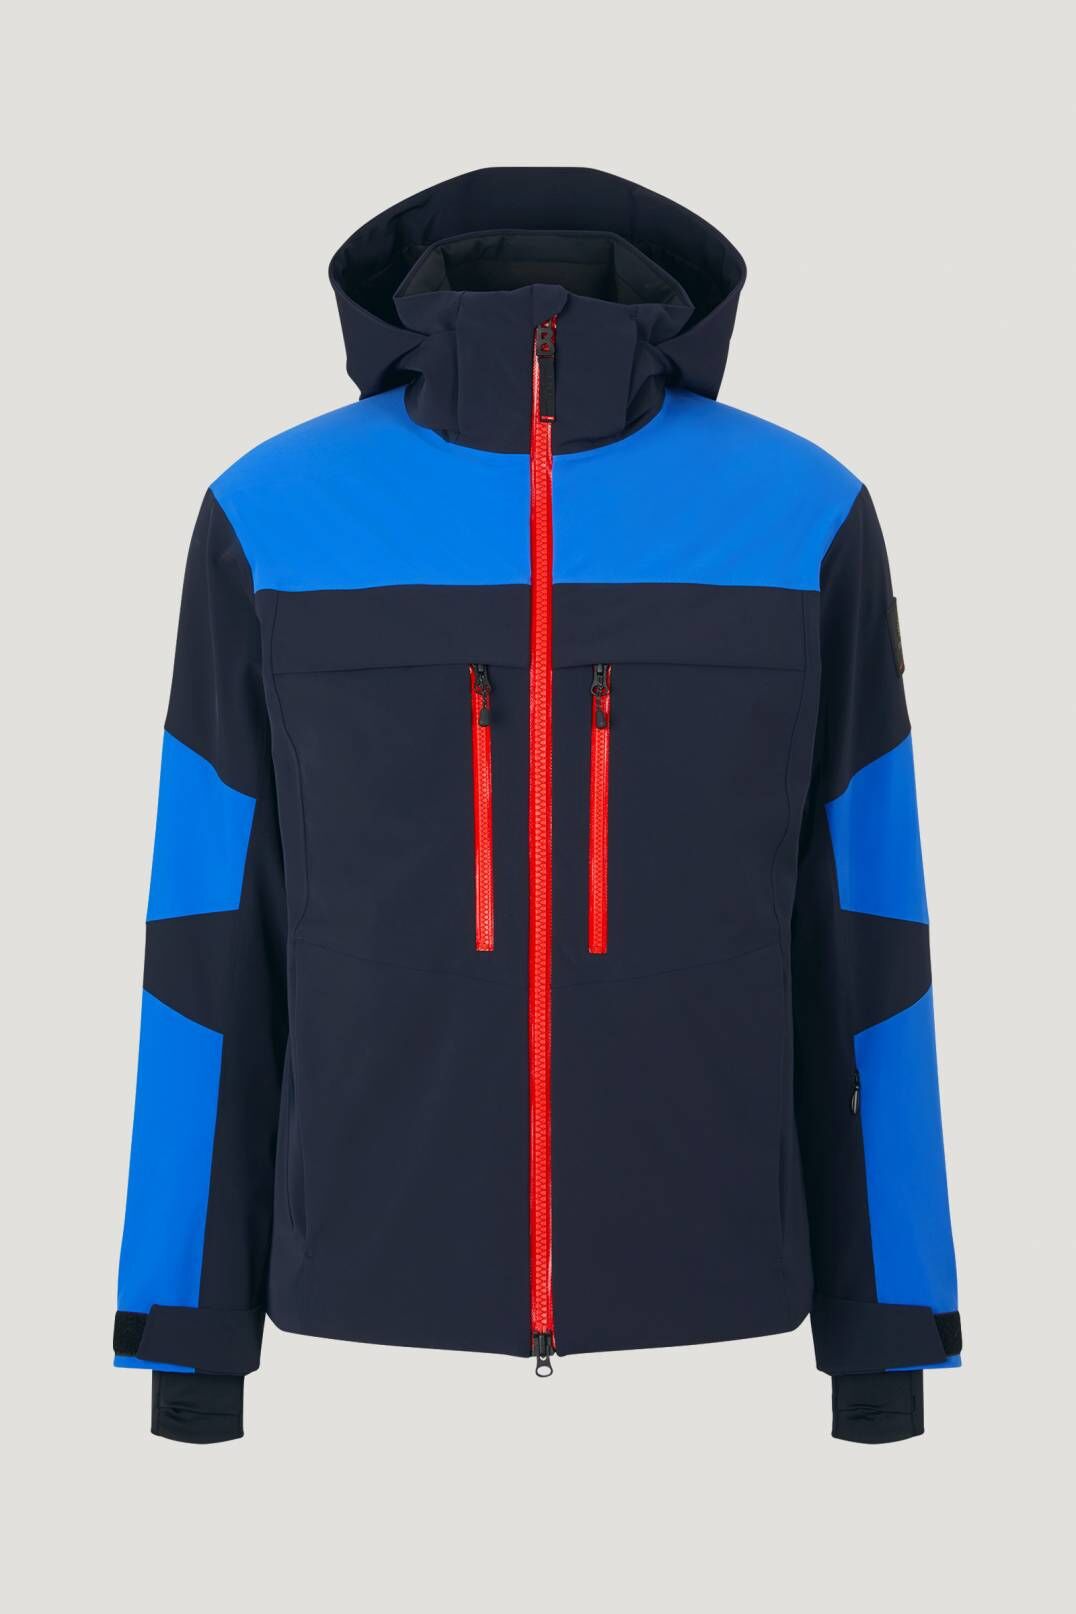 Bogner Fire + Ice Cervo-T - Ski jacket - Men's